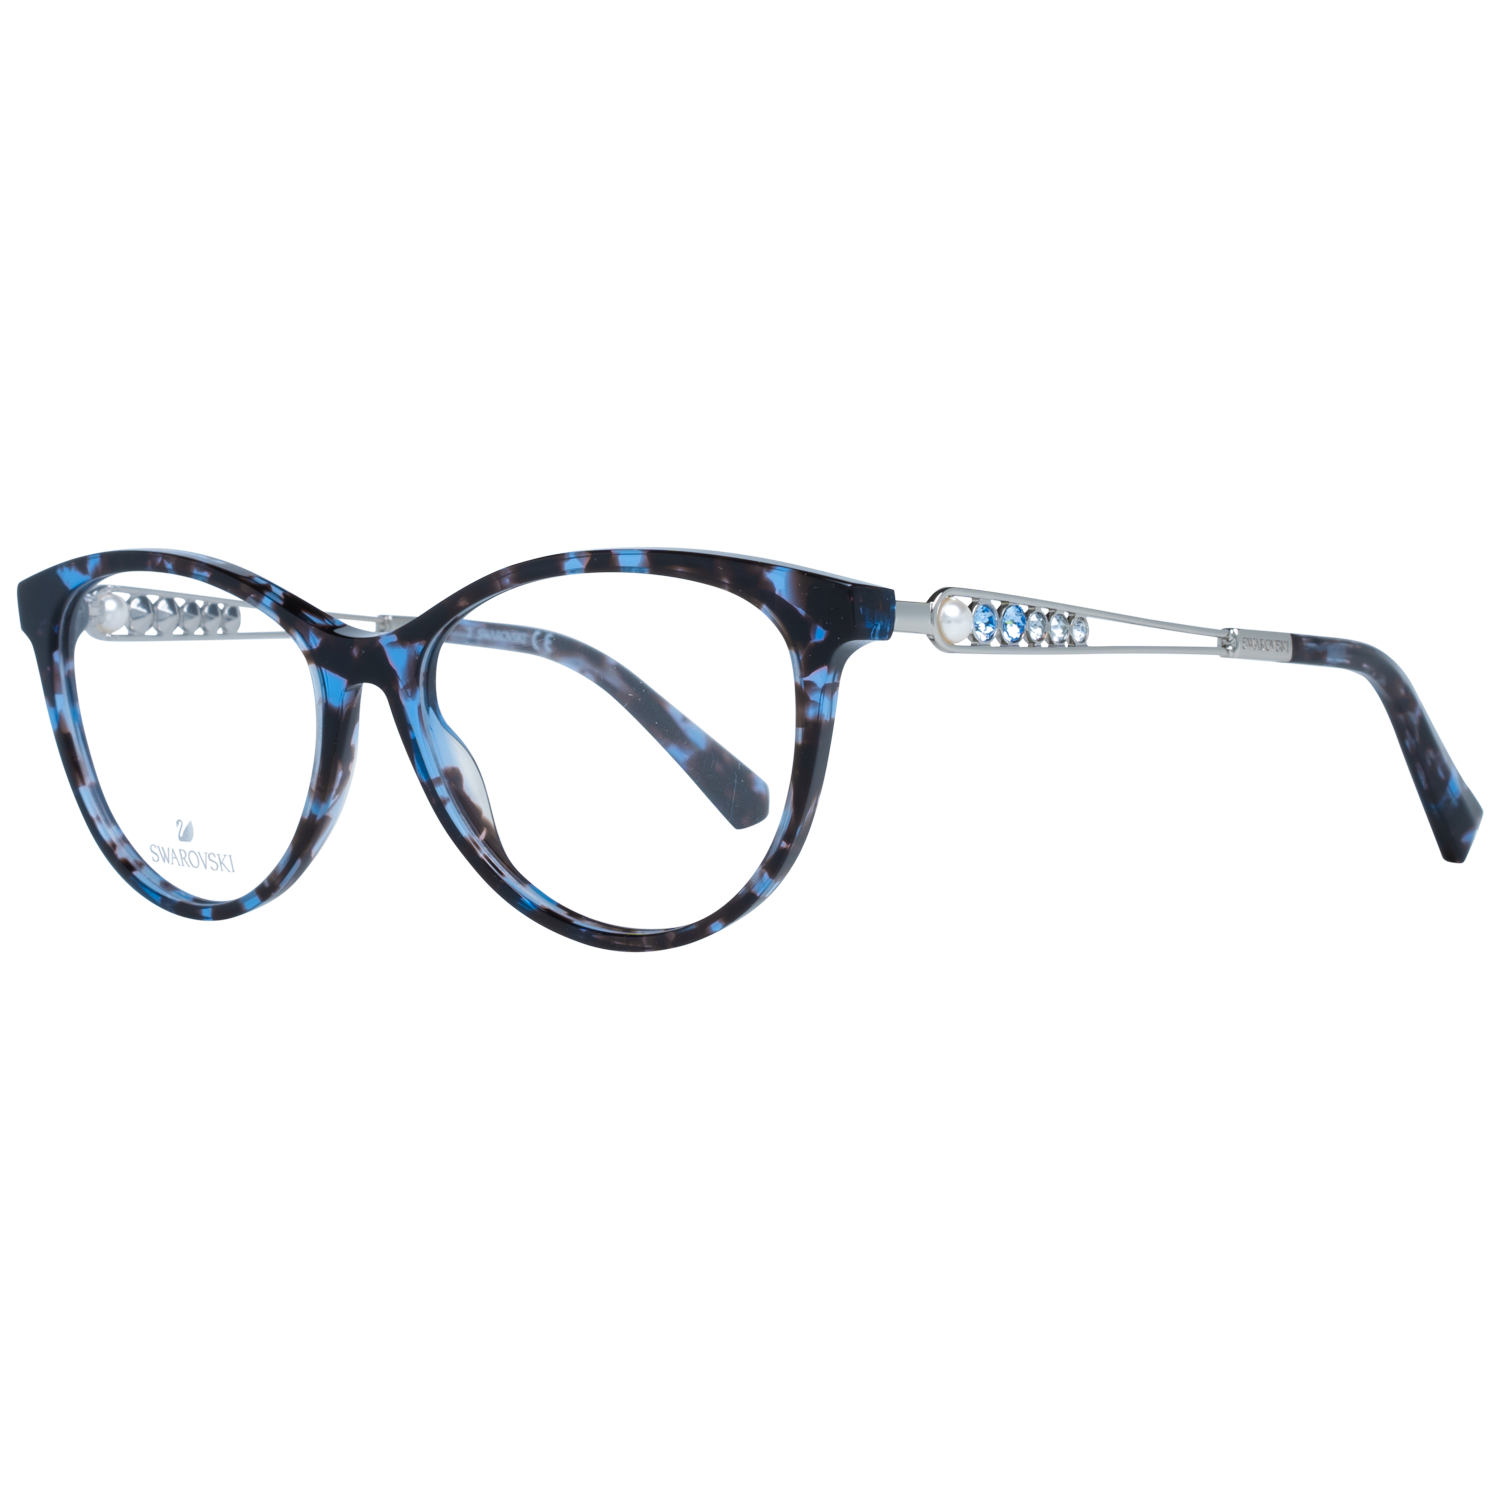 Swarovski Frames Swarovski Women Glasses Optical Frame SK5341 055 52 Eyeglasses Eyewear UK USA Australia 